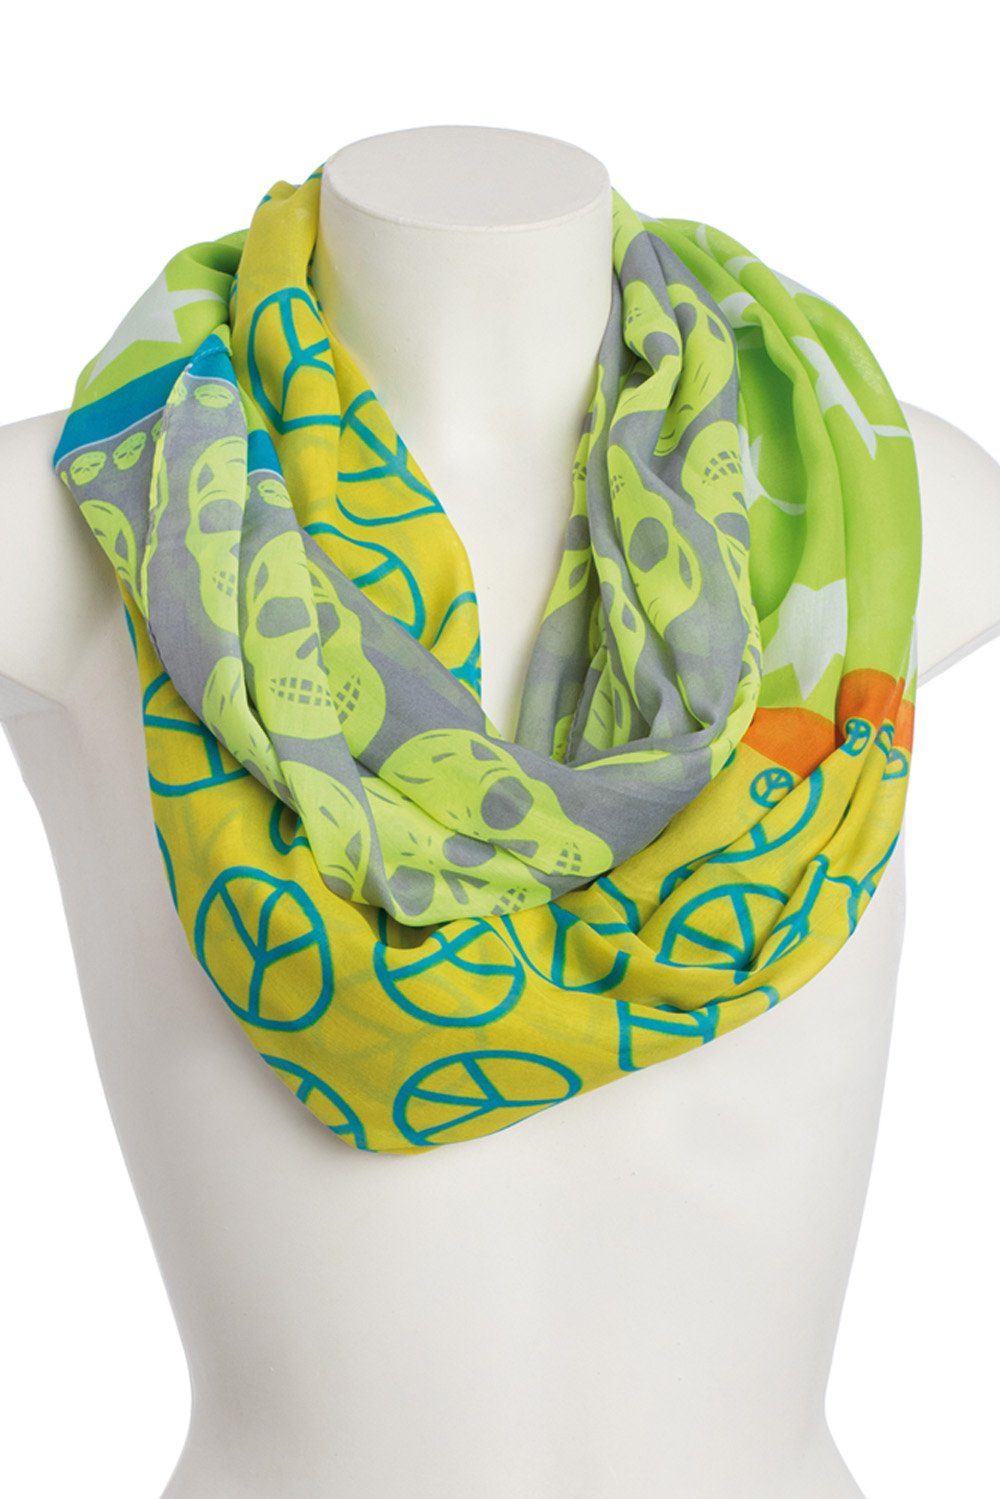 Goodman Design Modeschal Schal Happy mit fröhlichem Muster Peace, aus Seide und Viscose Gelb-Grau